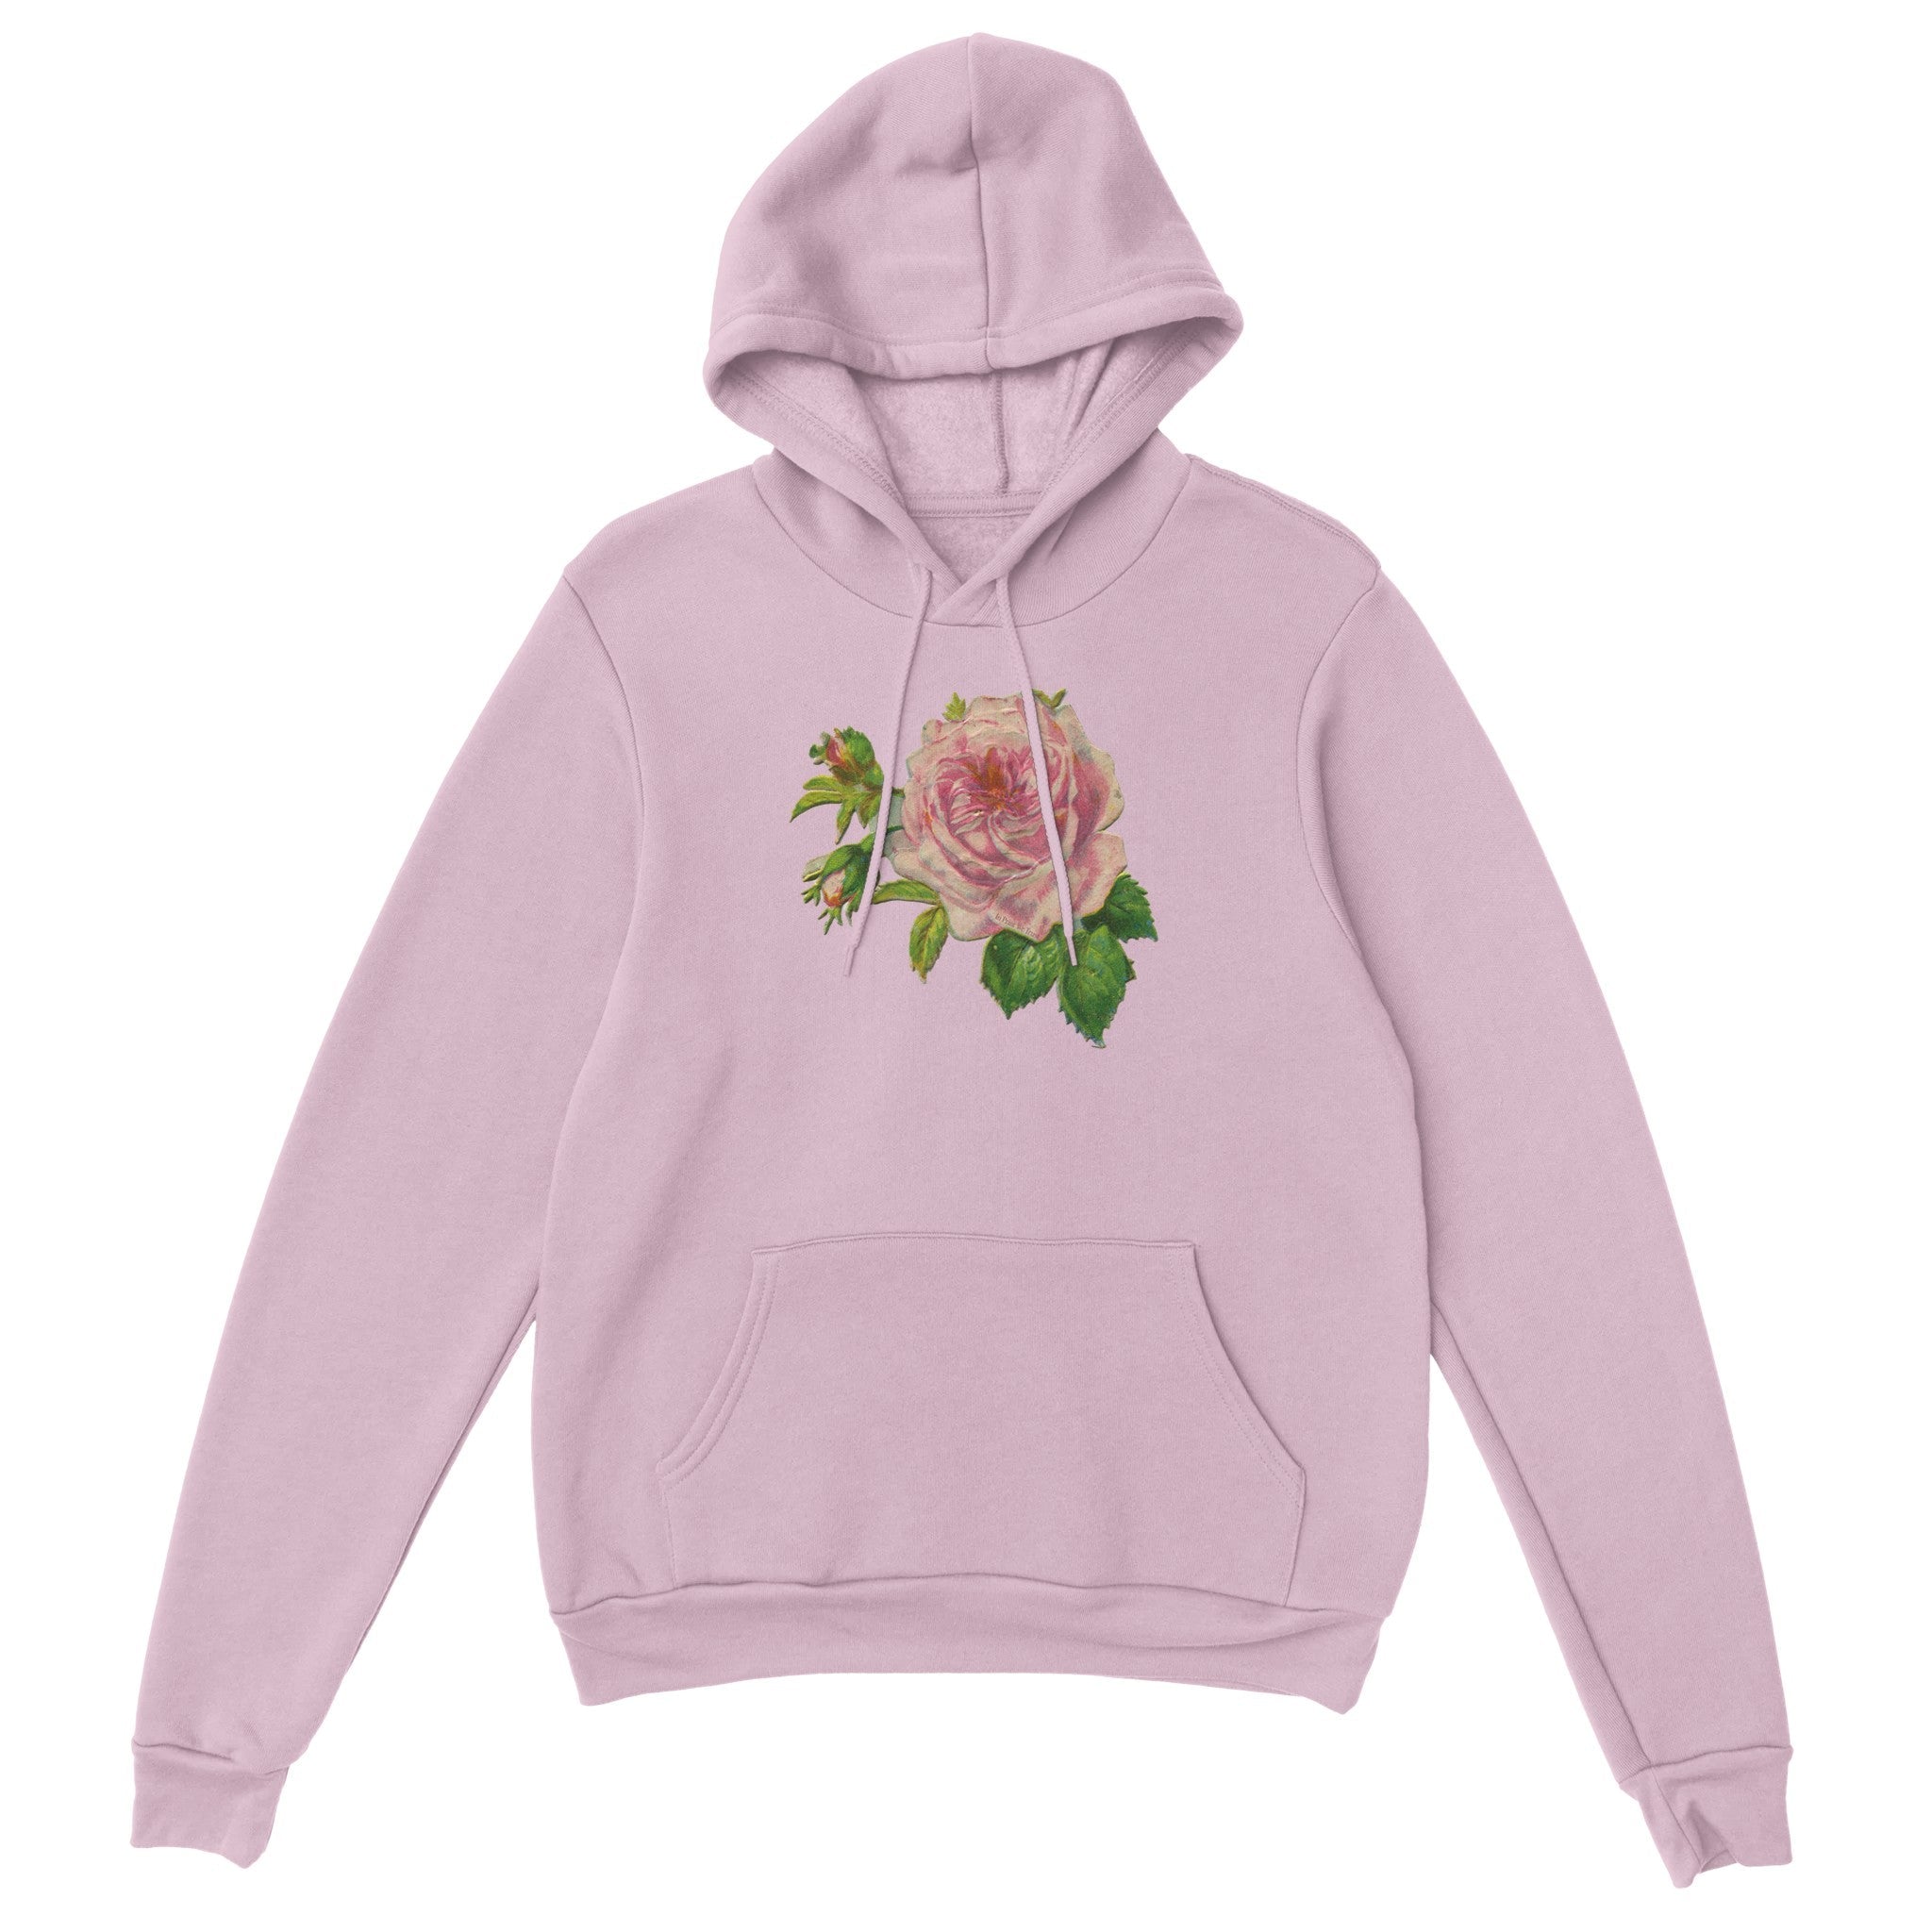 'Bed of Roses' hoodie - In Print We Trust